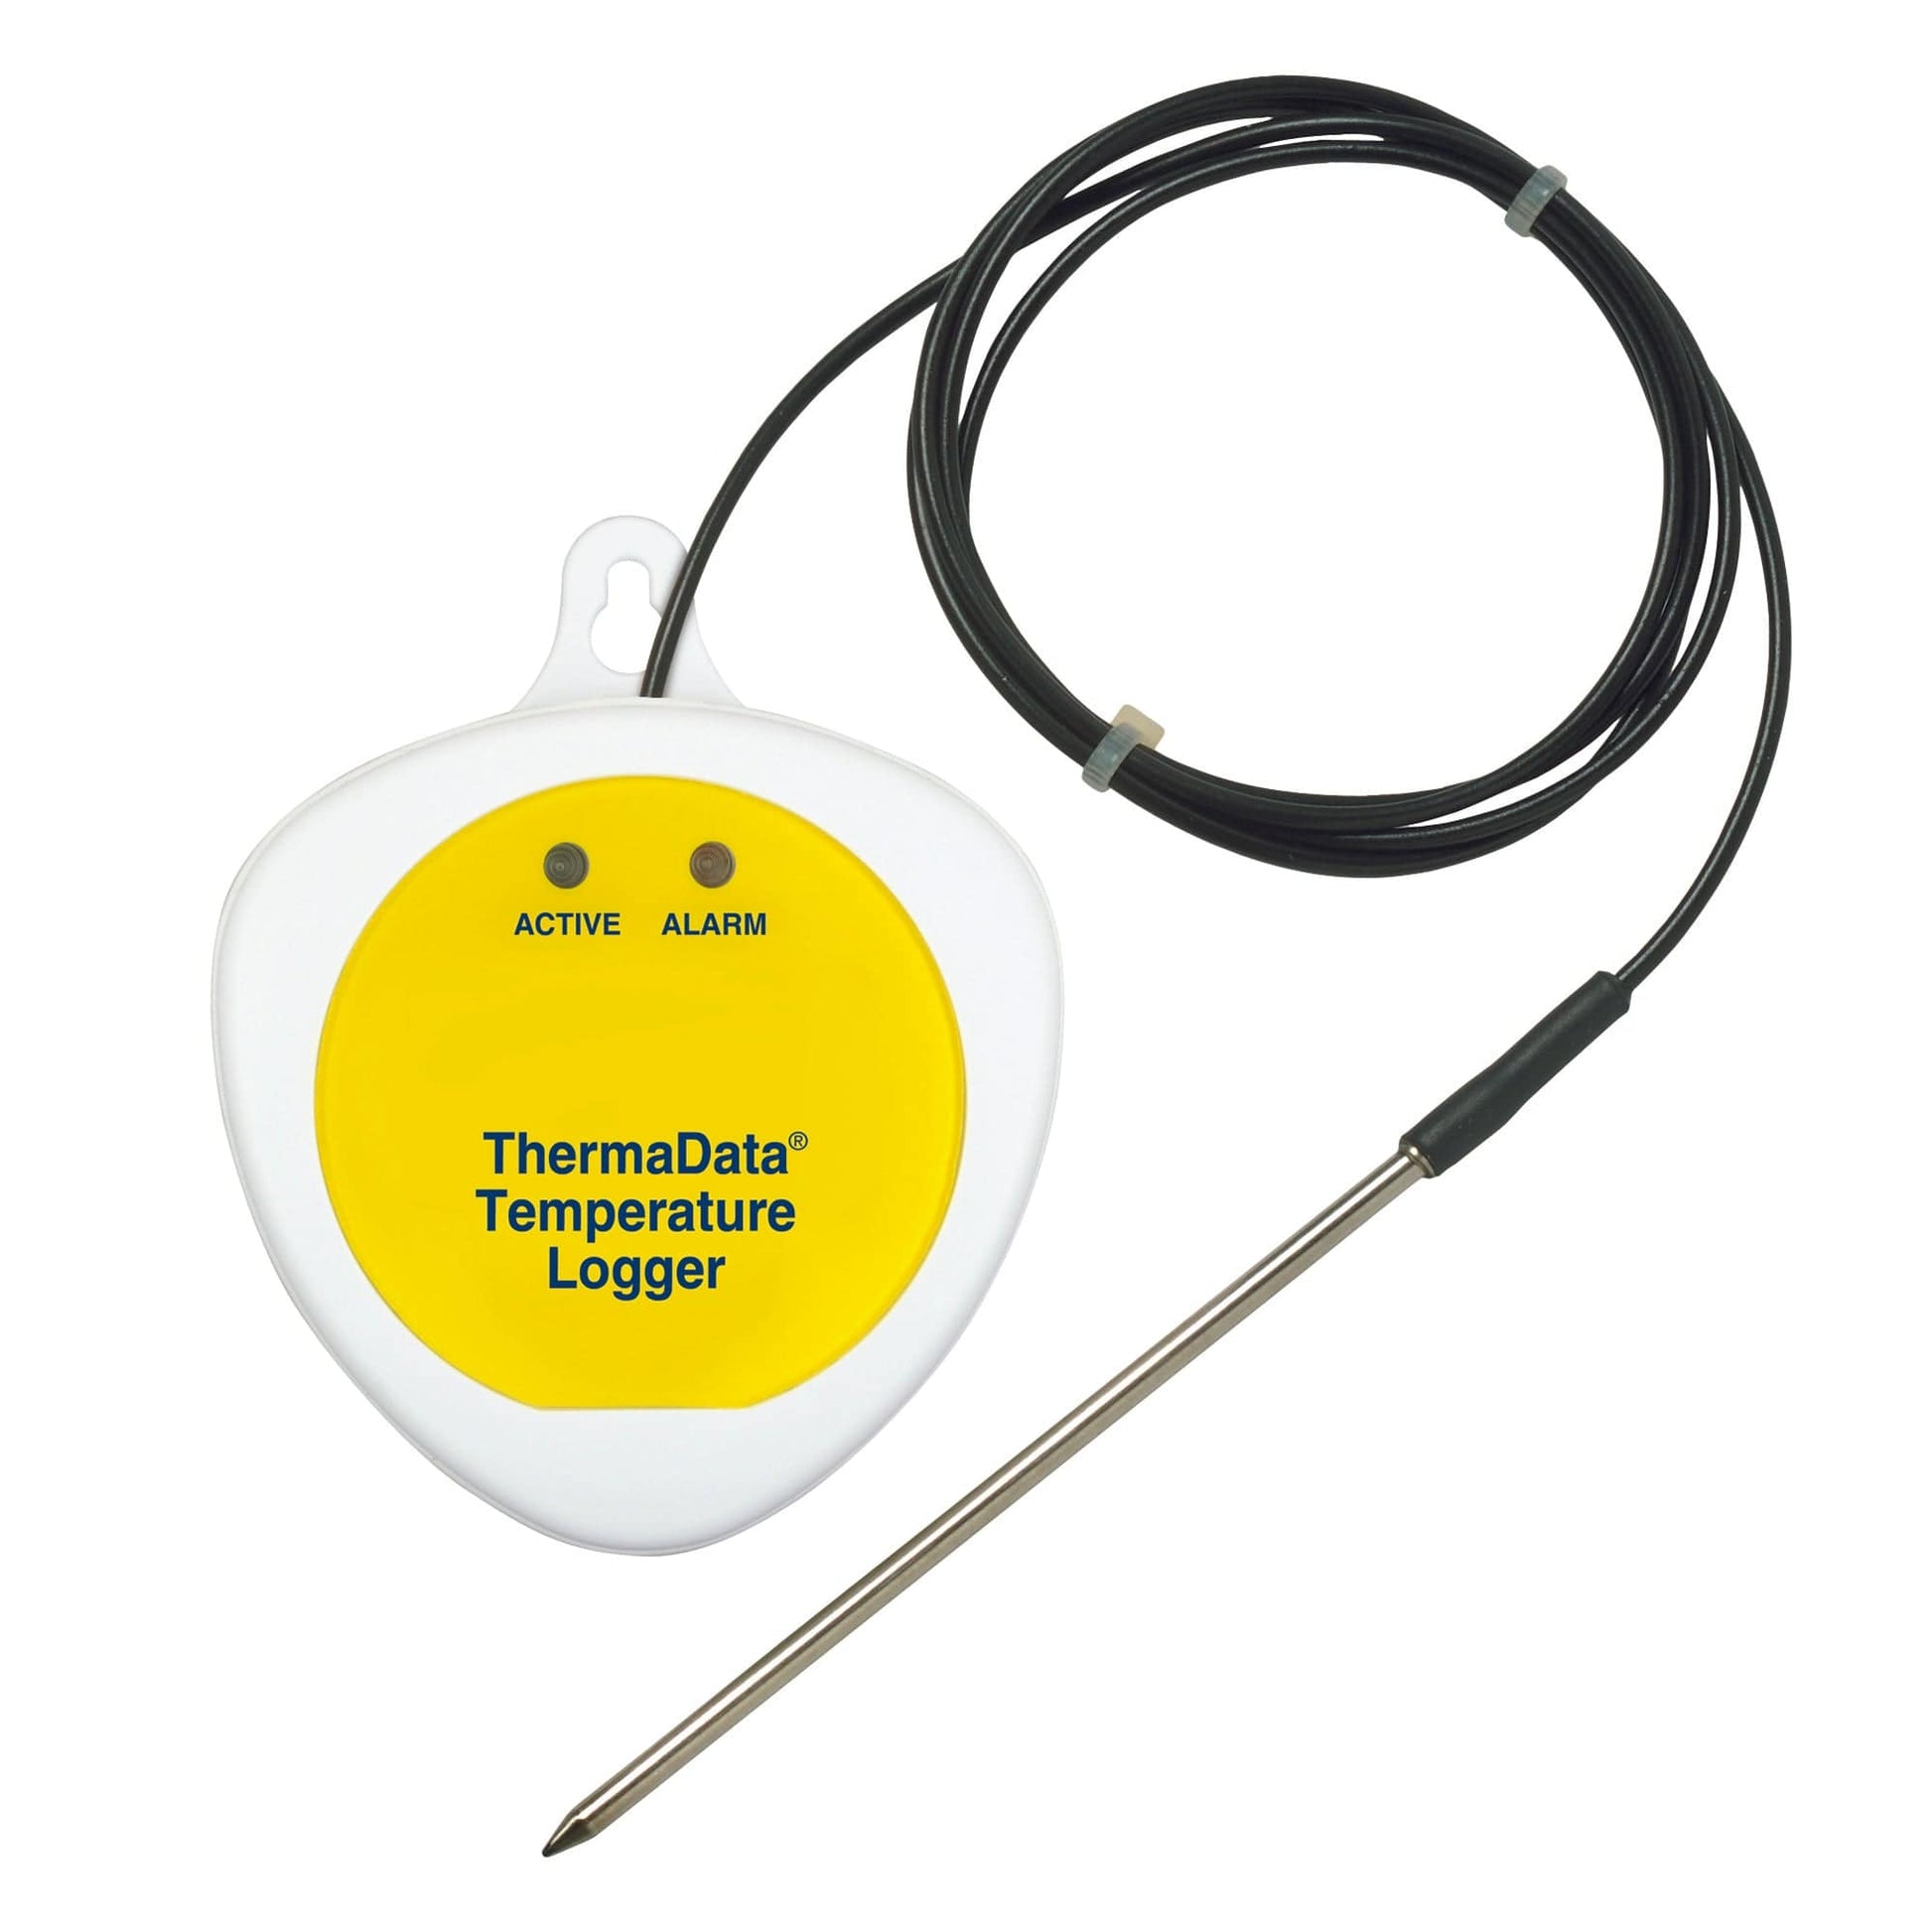 L'Enregistreur ThermaData® TBF avec capteur externe de Thermomètre.fr est un enregistreur de température jaune et blanc équipé d'un câble et d'une sonde noirs utilisant la technologie de thermistance NTC. Cet appareil comporte deux voyants lumineux intitulés « Actif » et « Alarme », assurant une surveillance précise dans une plage de température de -40 à 125°C.